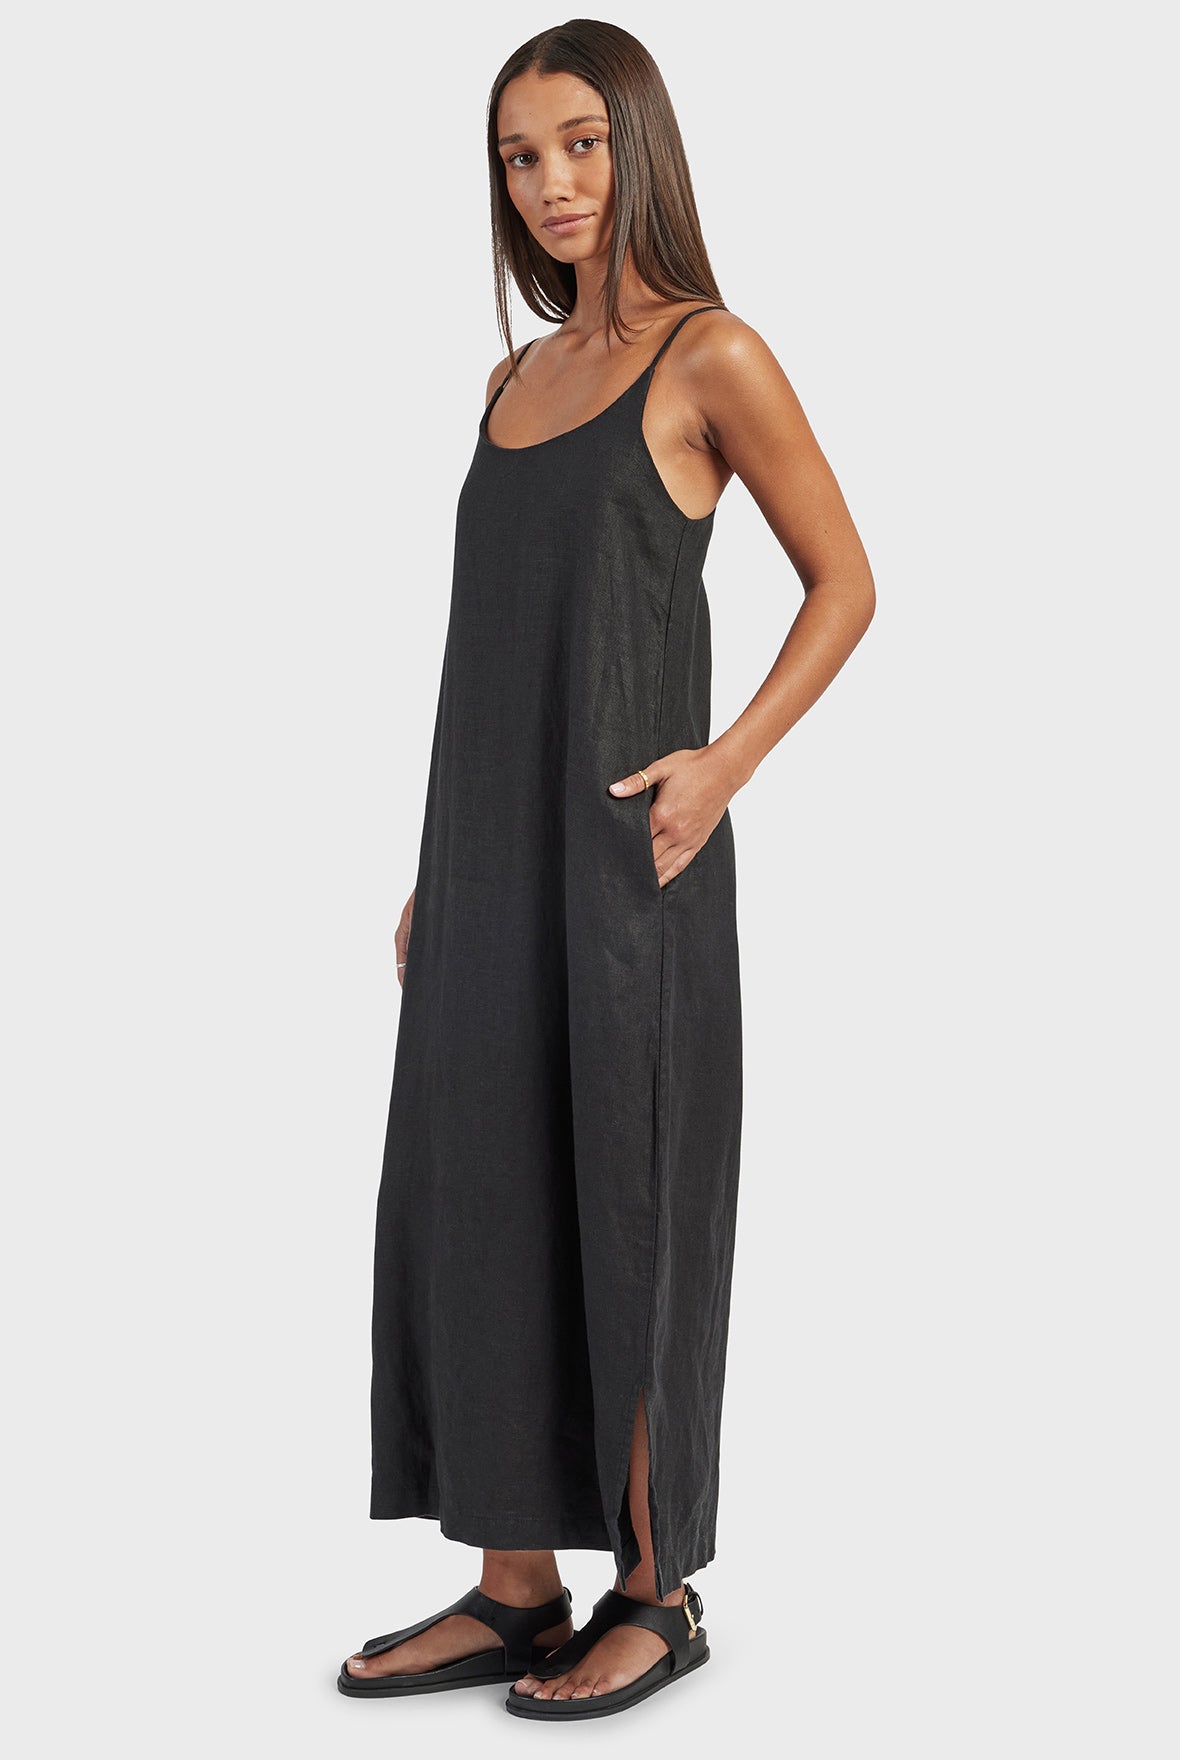 Essential Linen Slip Dress in Black | Academy Brand